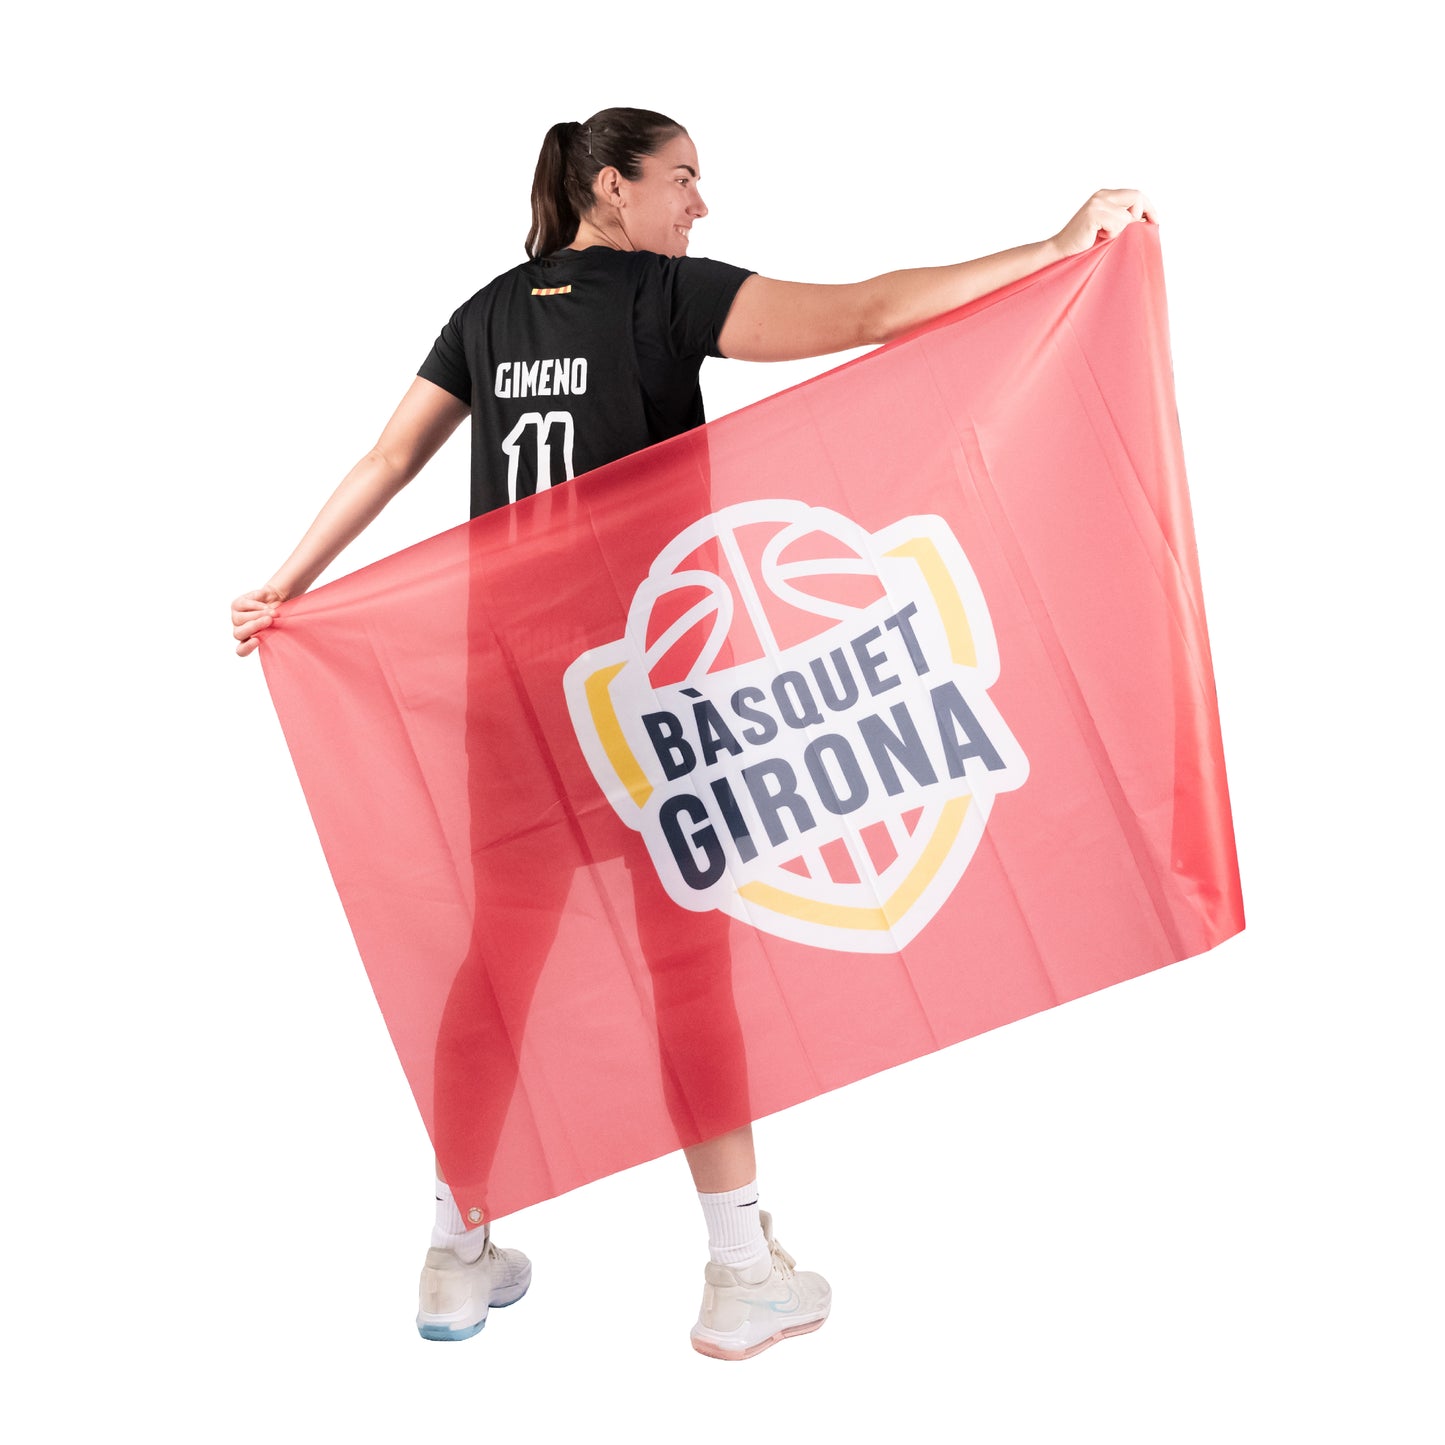 Flag Basketball Girona